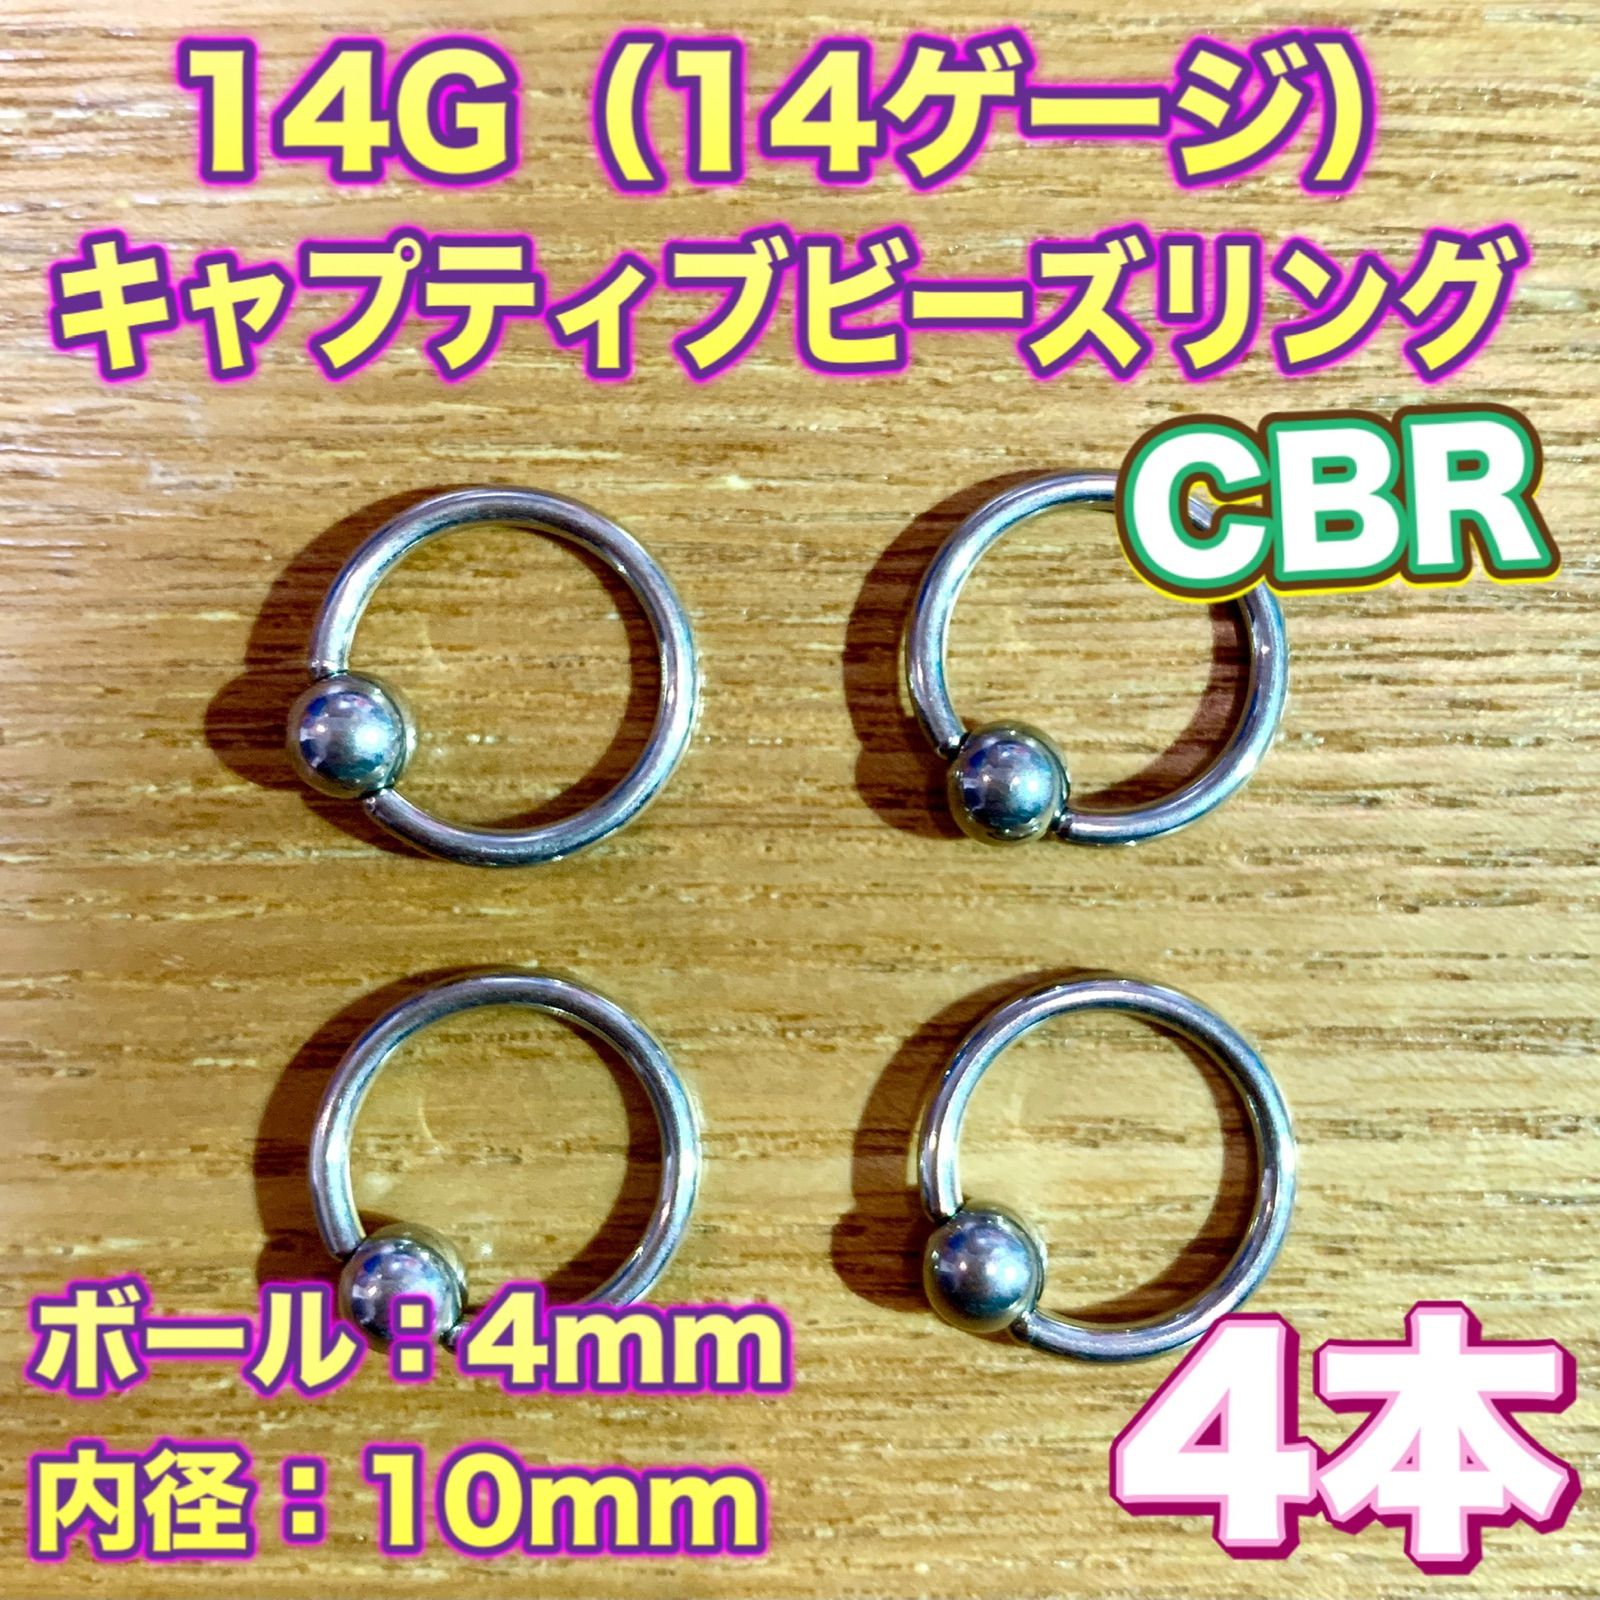 14G】キャプティブビーズリング（CBR）4本/ボール4mm/内径10mm メルチャルショップ メルカリ